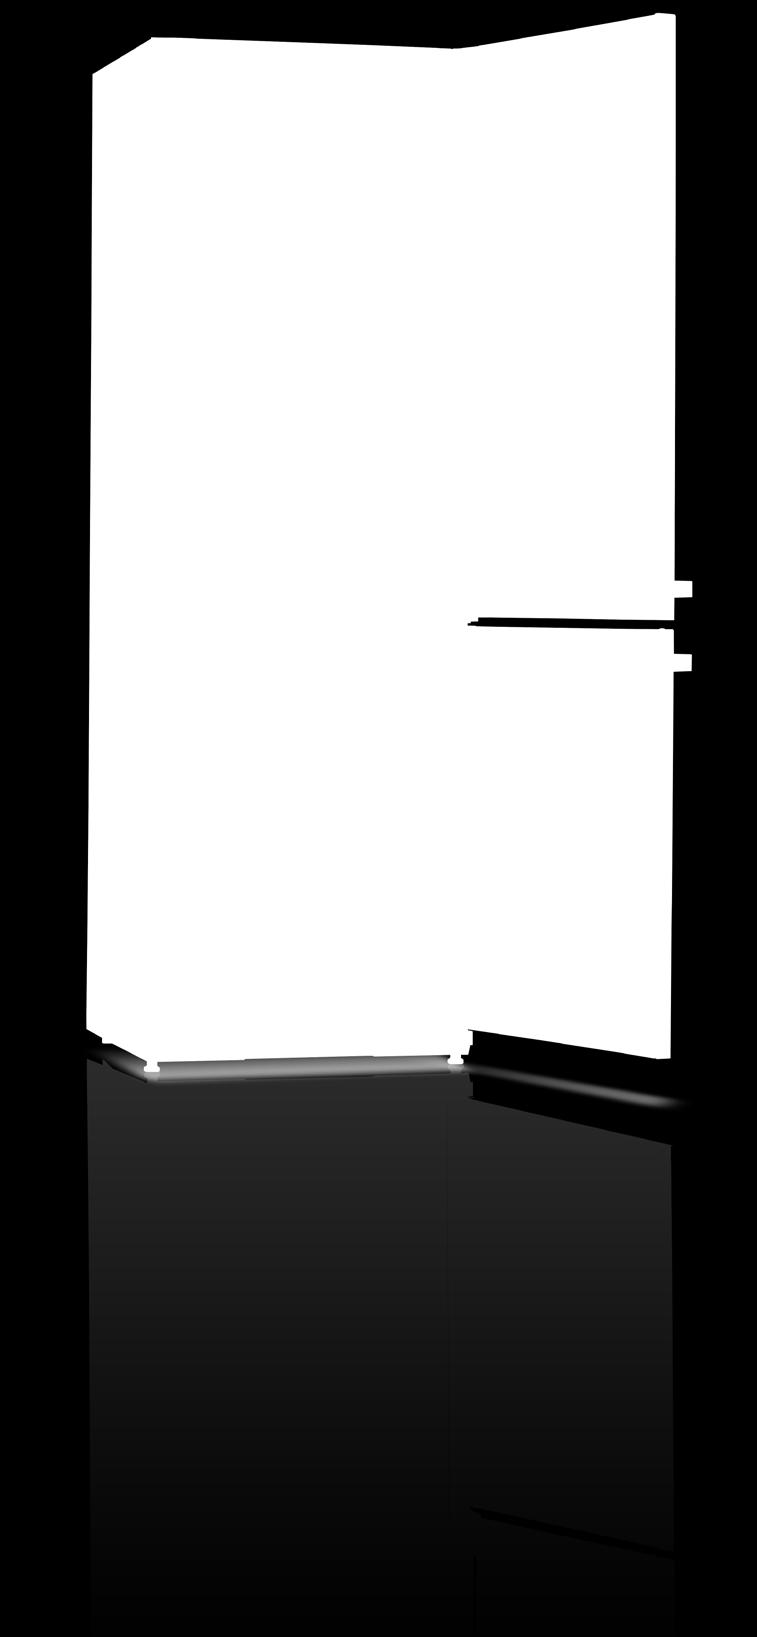 Speciális 0alacktartó (A+++ és А++ osztály1 modelleknél) Üvegpolc a, C FRESH ZONE rekesz felett Üvegpolc a zöldség és gyümölcs fiók felett Kihúzható fiók teleszkópos síneken (A+++ osztályú